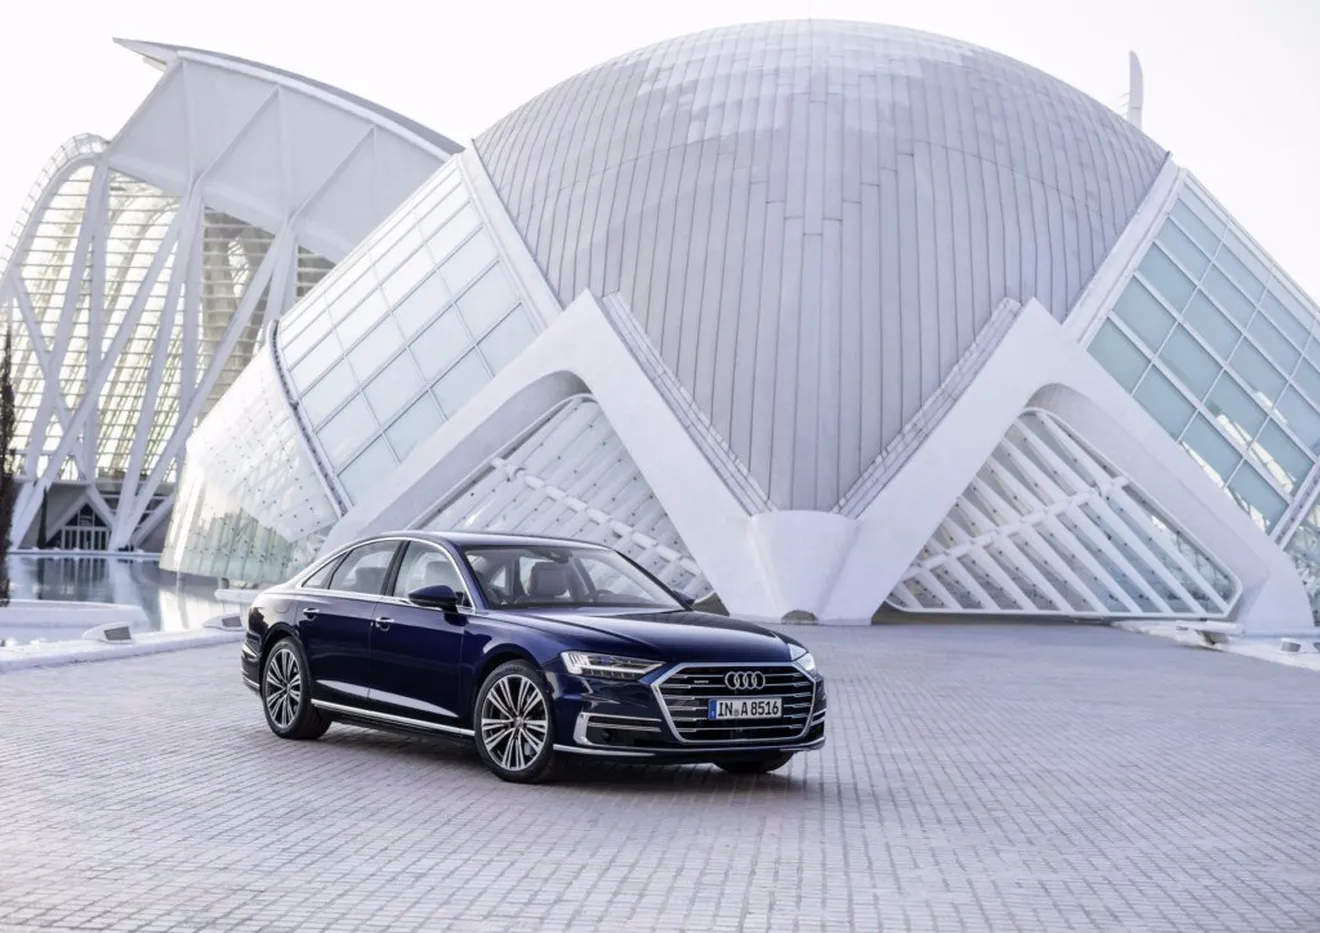 Audi utilizará la inteligencia artificial para avanzar en la conducción autónoma